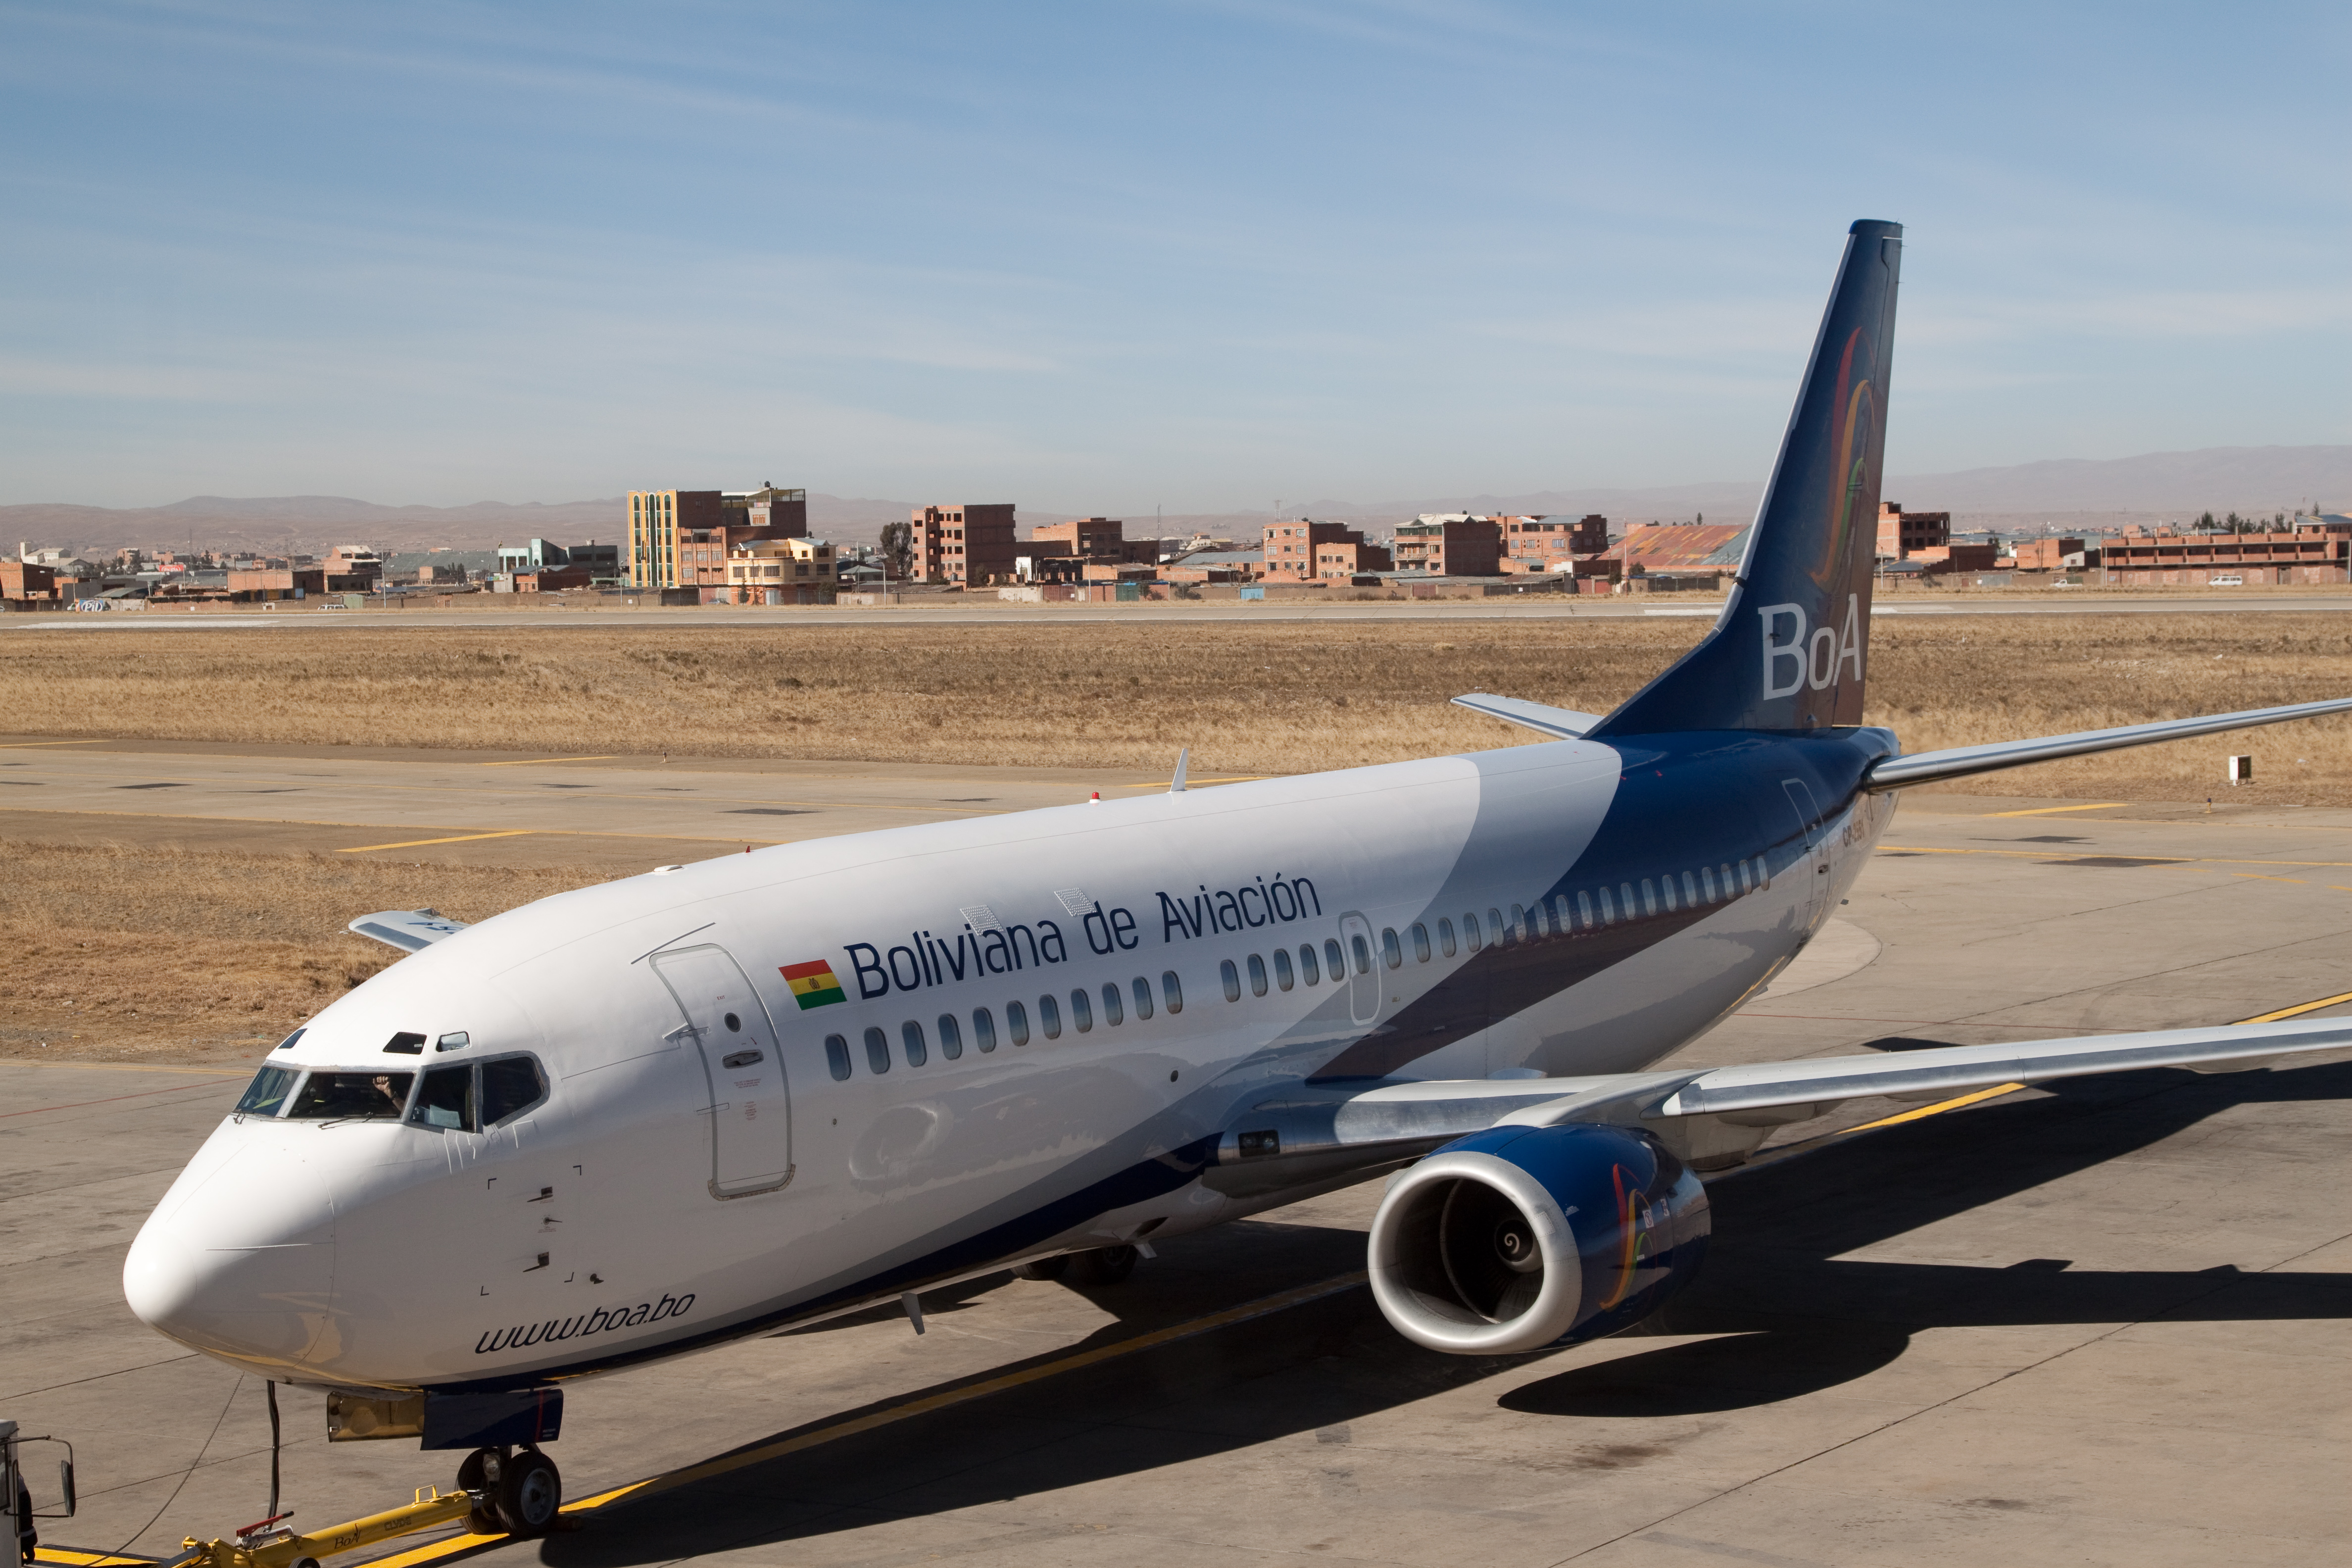 Boliviana de Aviación plane at La Paz airport